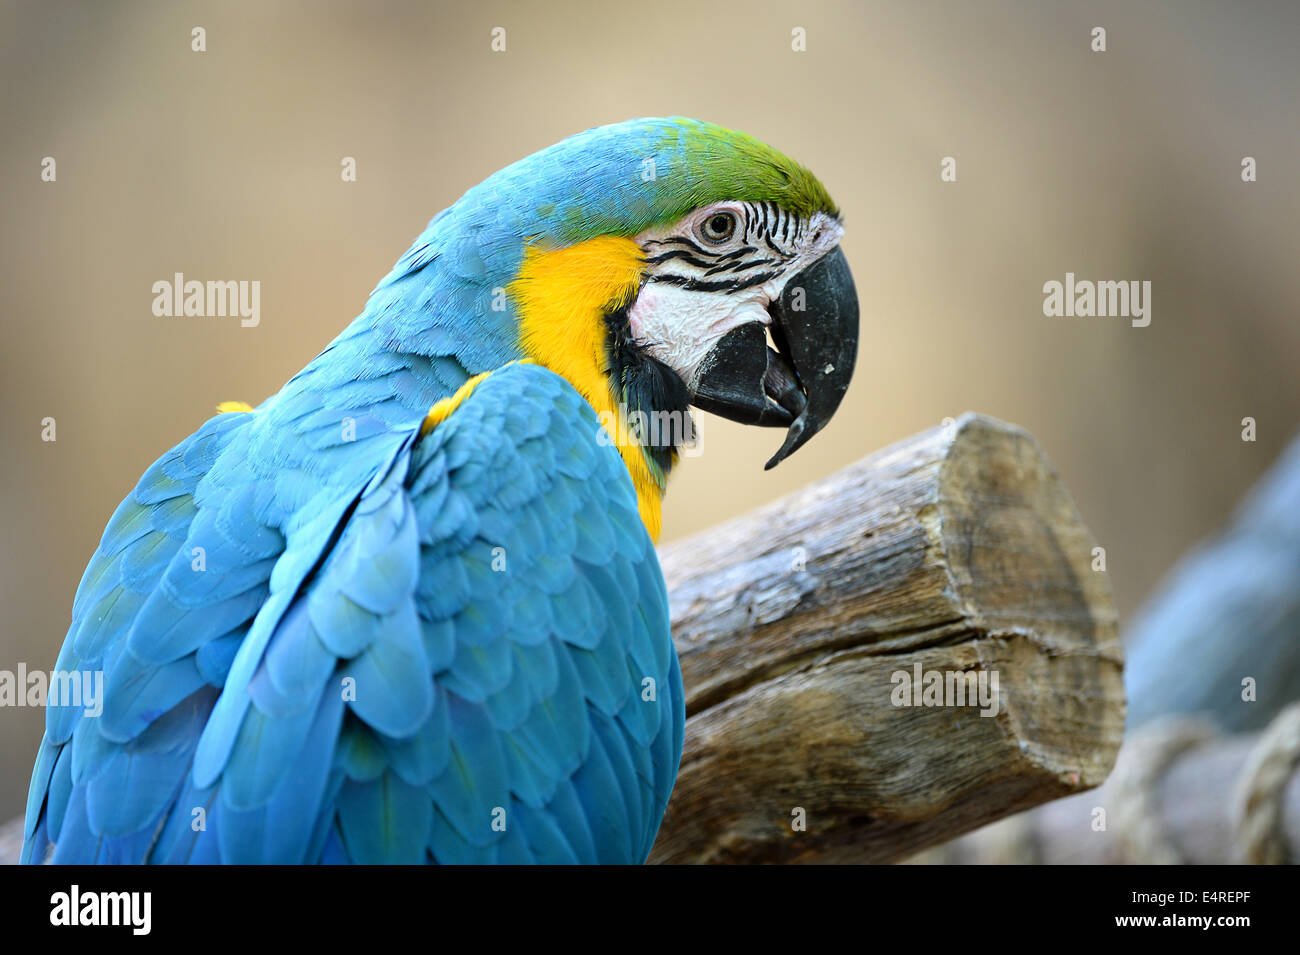 Retrato de aves guacamayo azul y amarillo Foto de stock